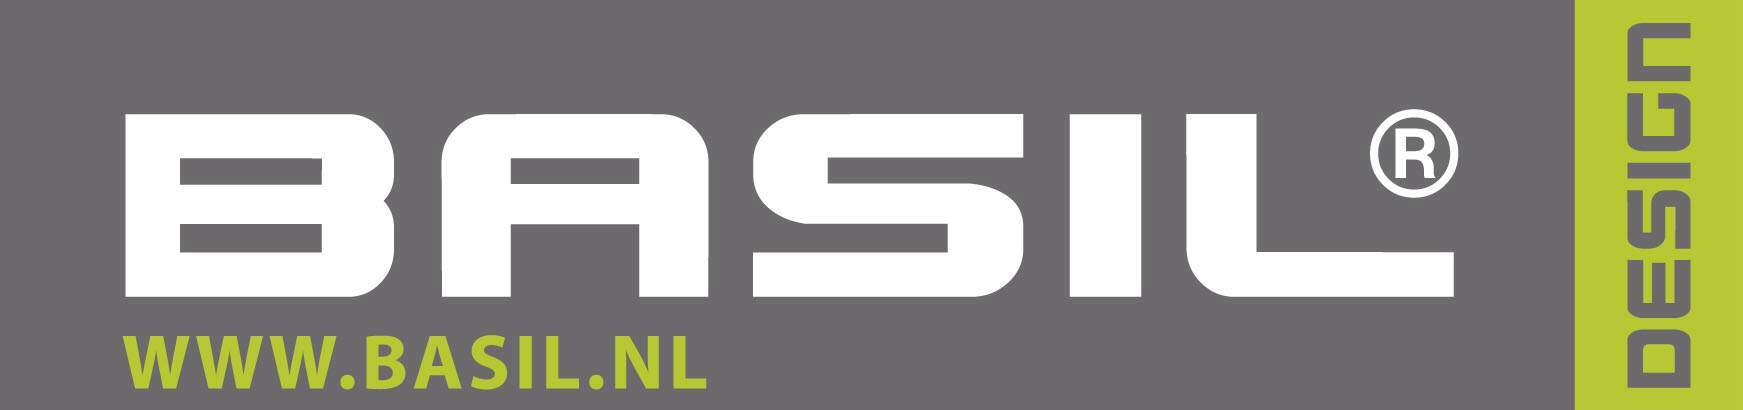 Basil-logo